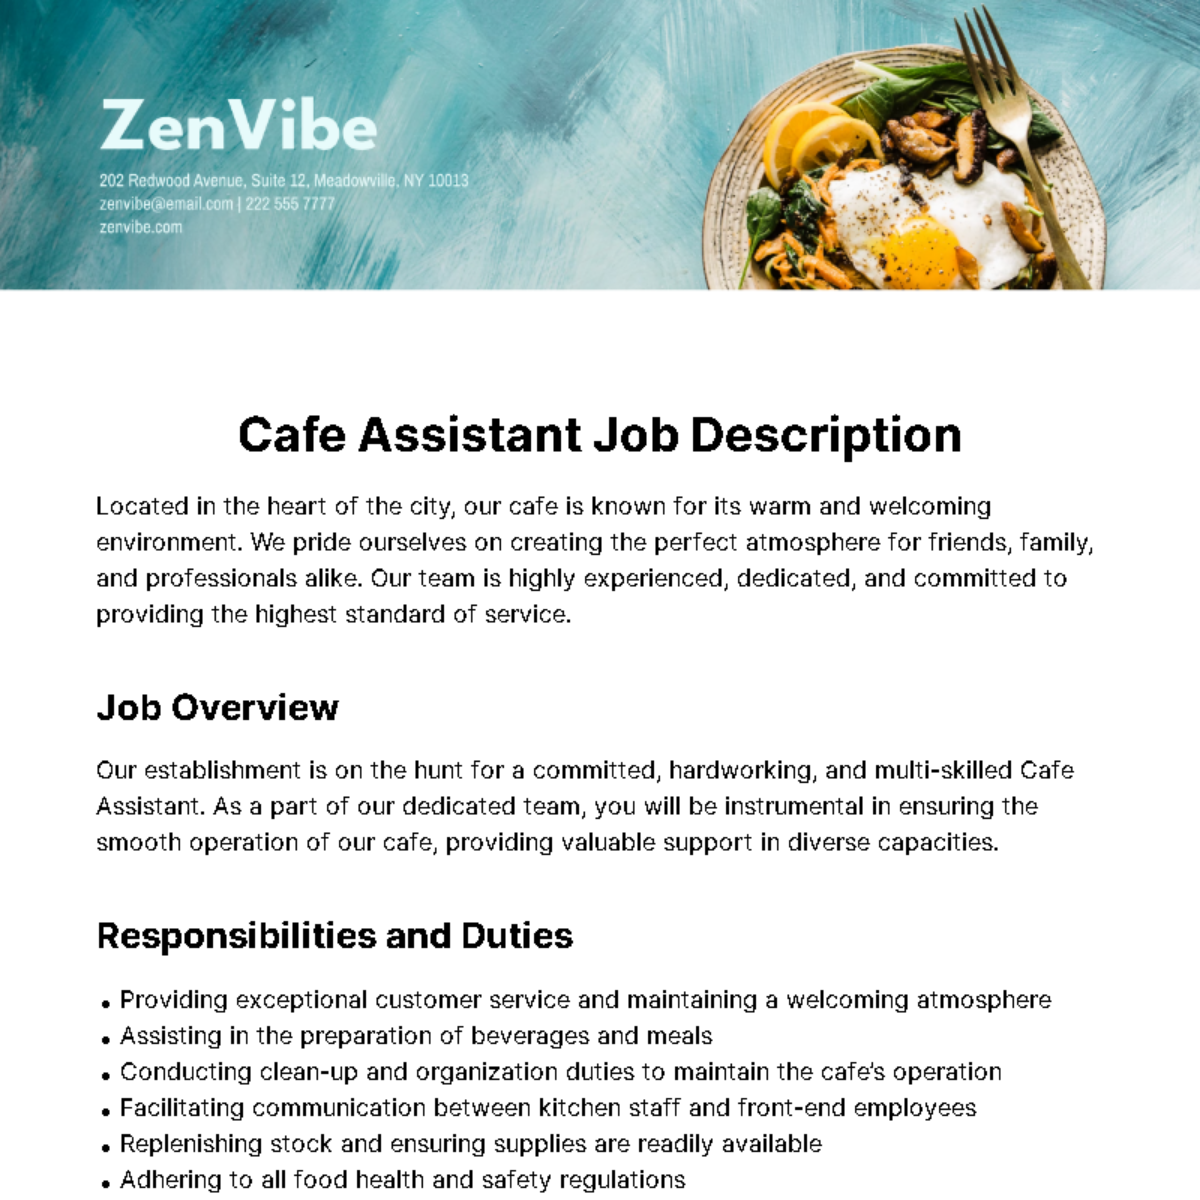 Cafe Assistant Job Description Template